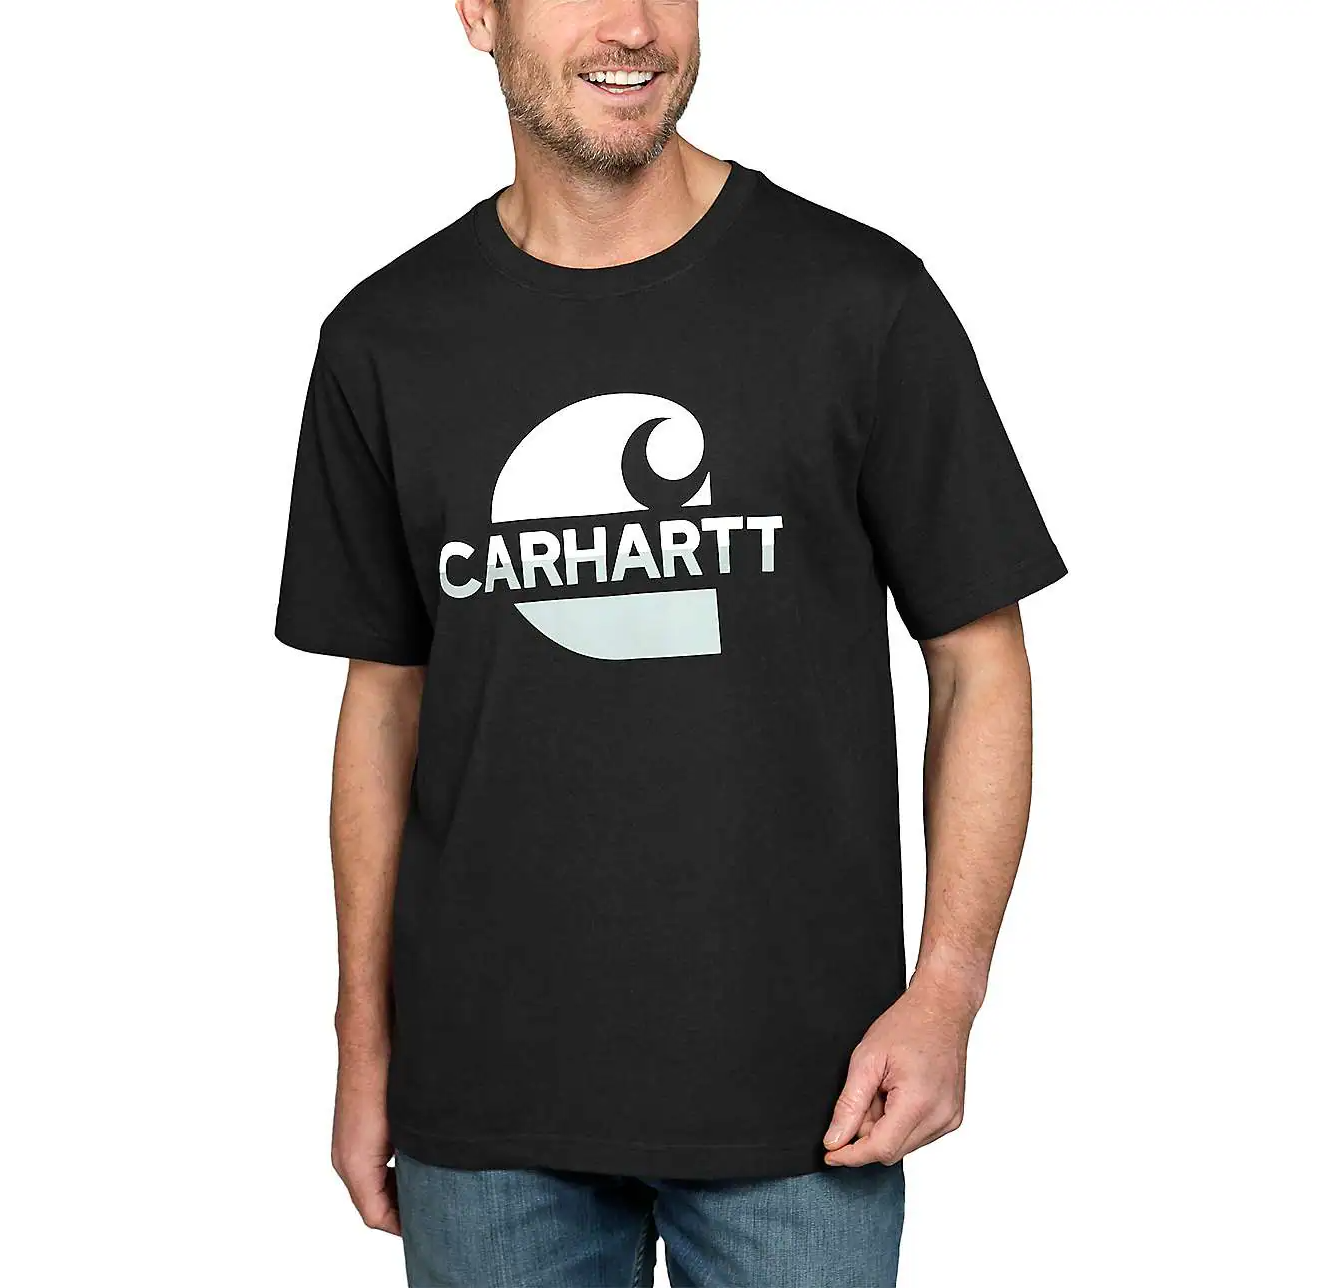 Carhartt Heavyweight Short Sleeve Carhartt Graphic T-Shirt 105909